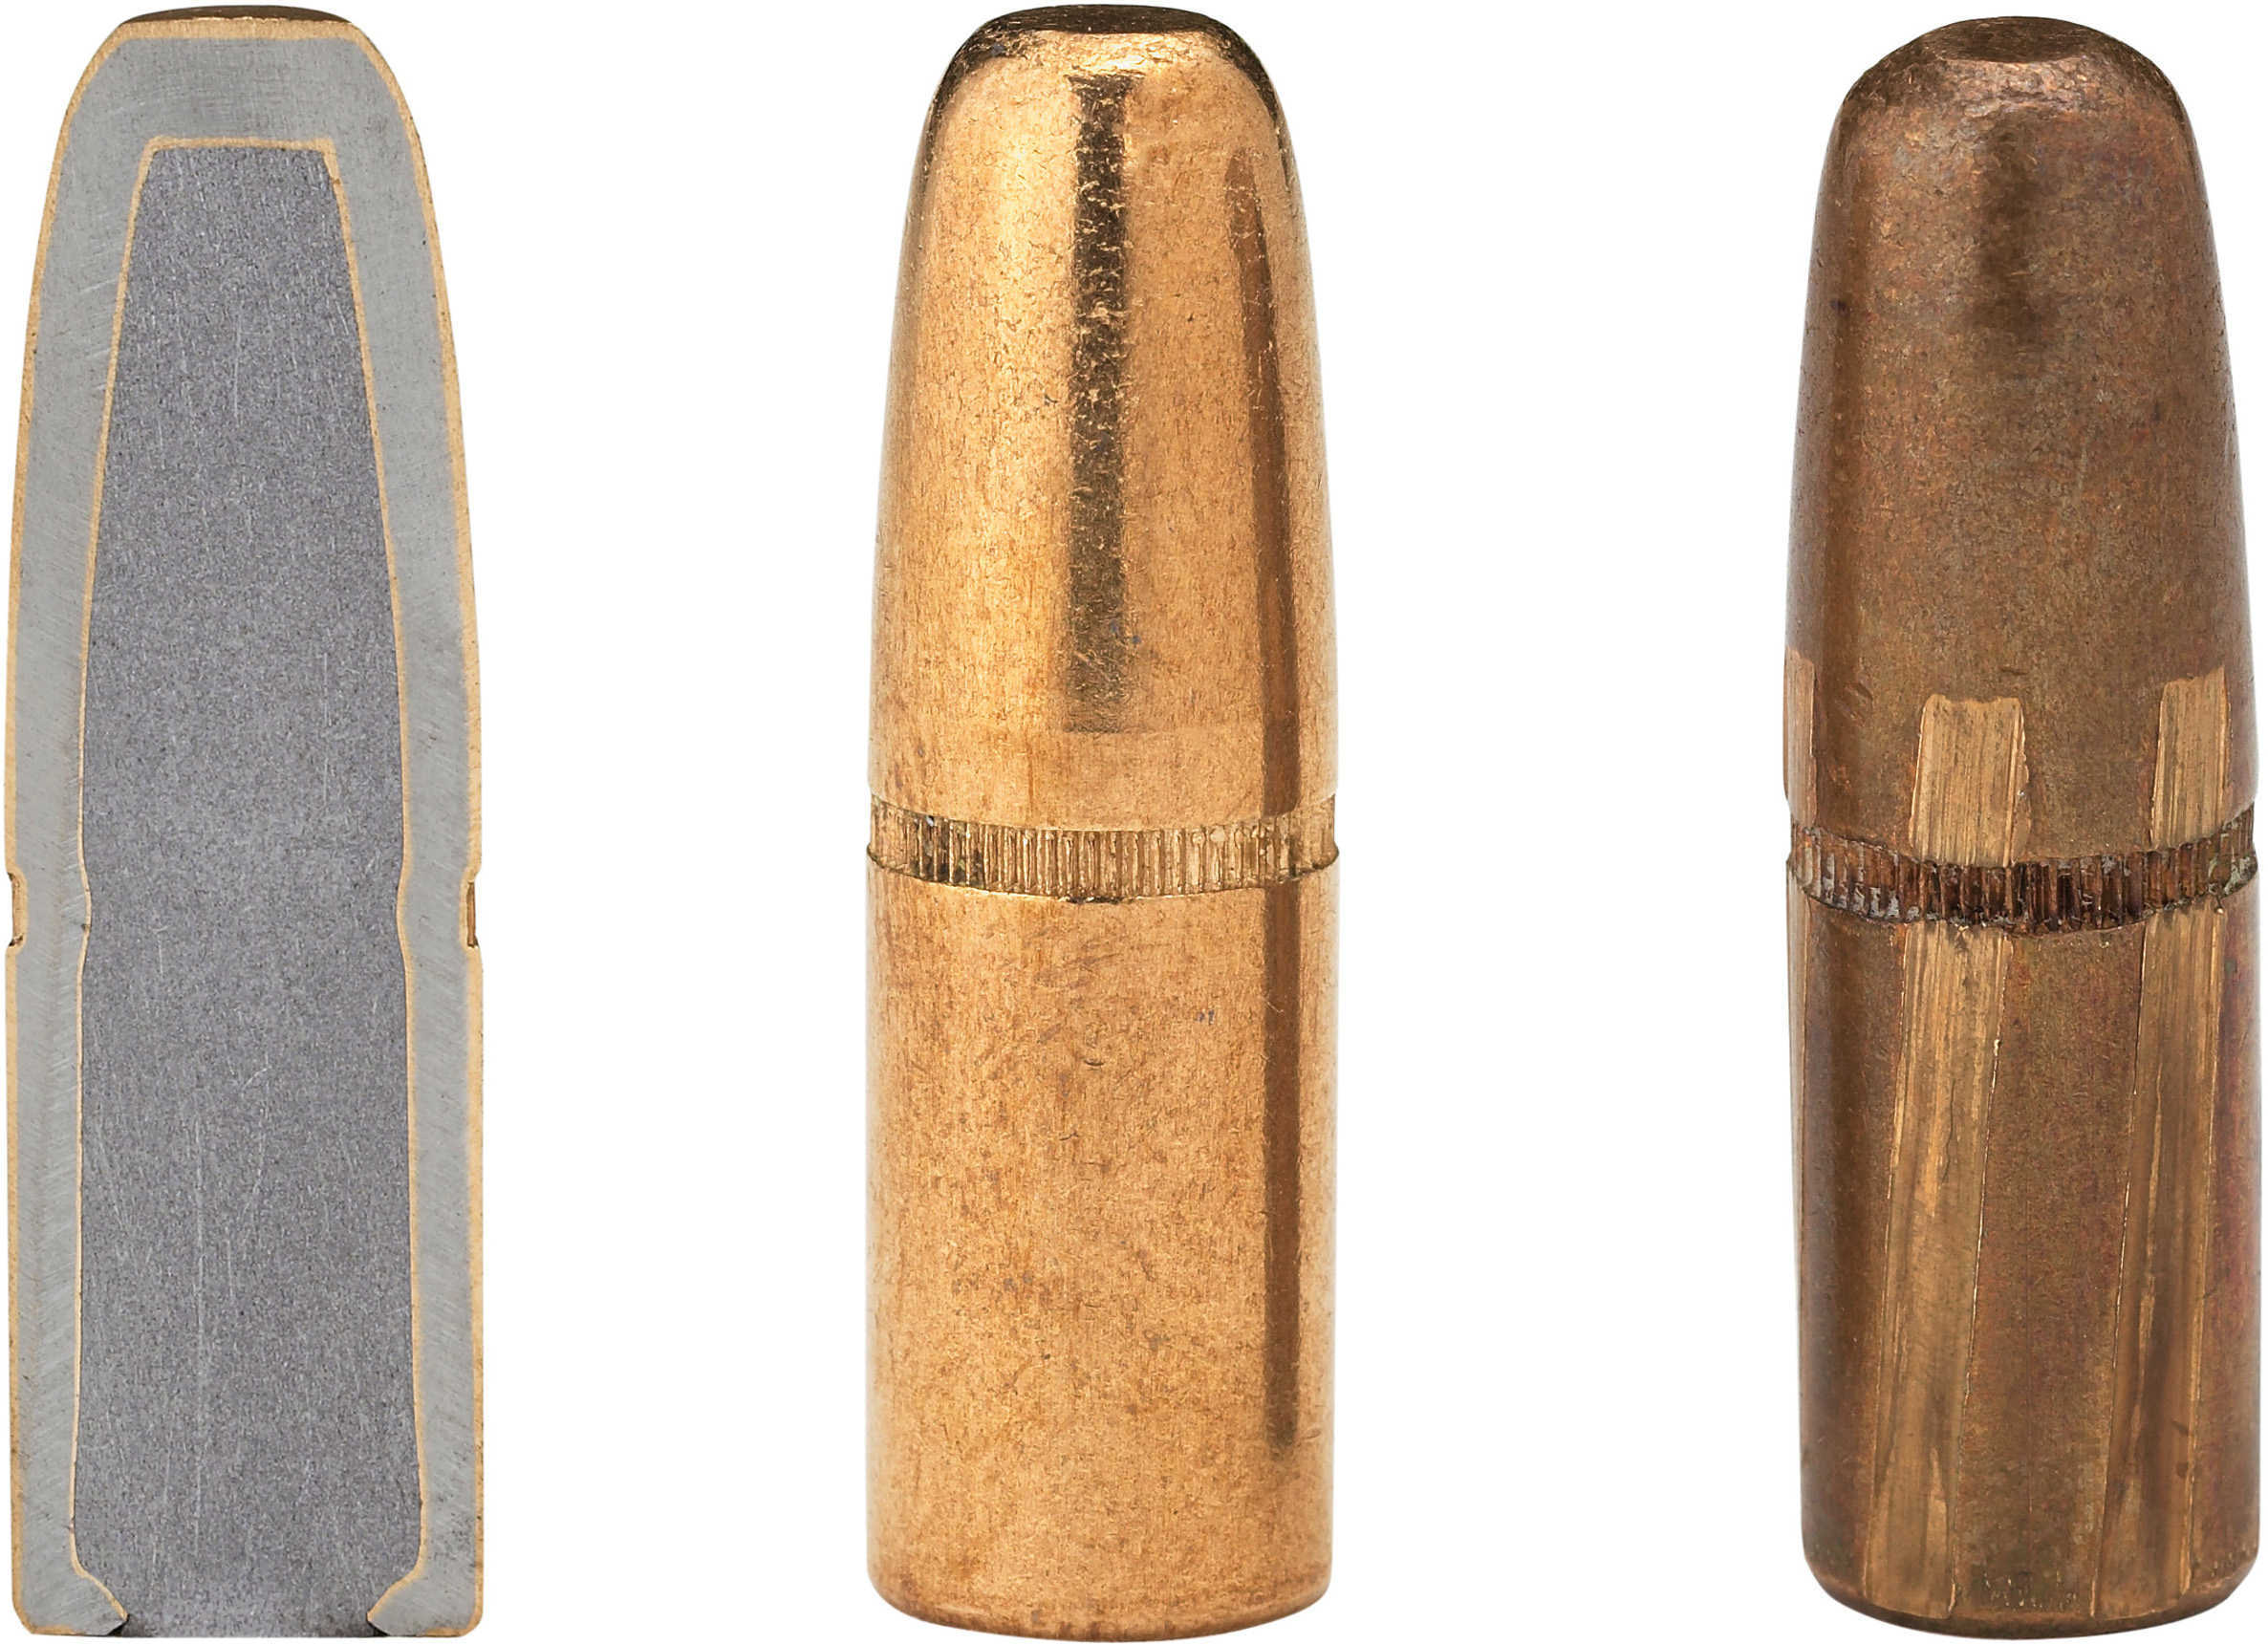 Hornady Bullet, 416 Caliber .416 400 Grain Dgs, Rds